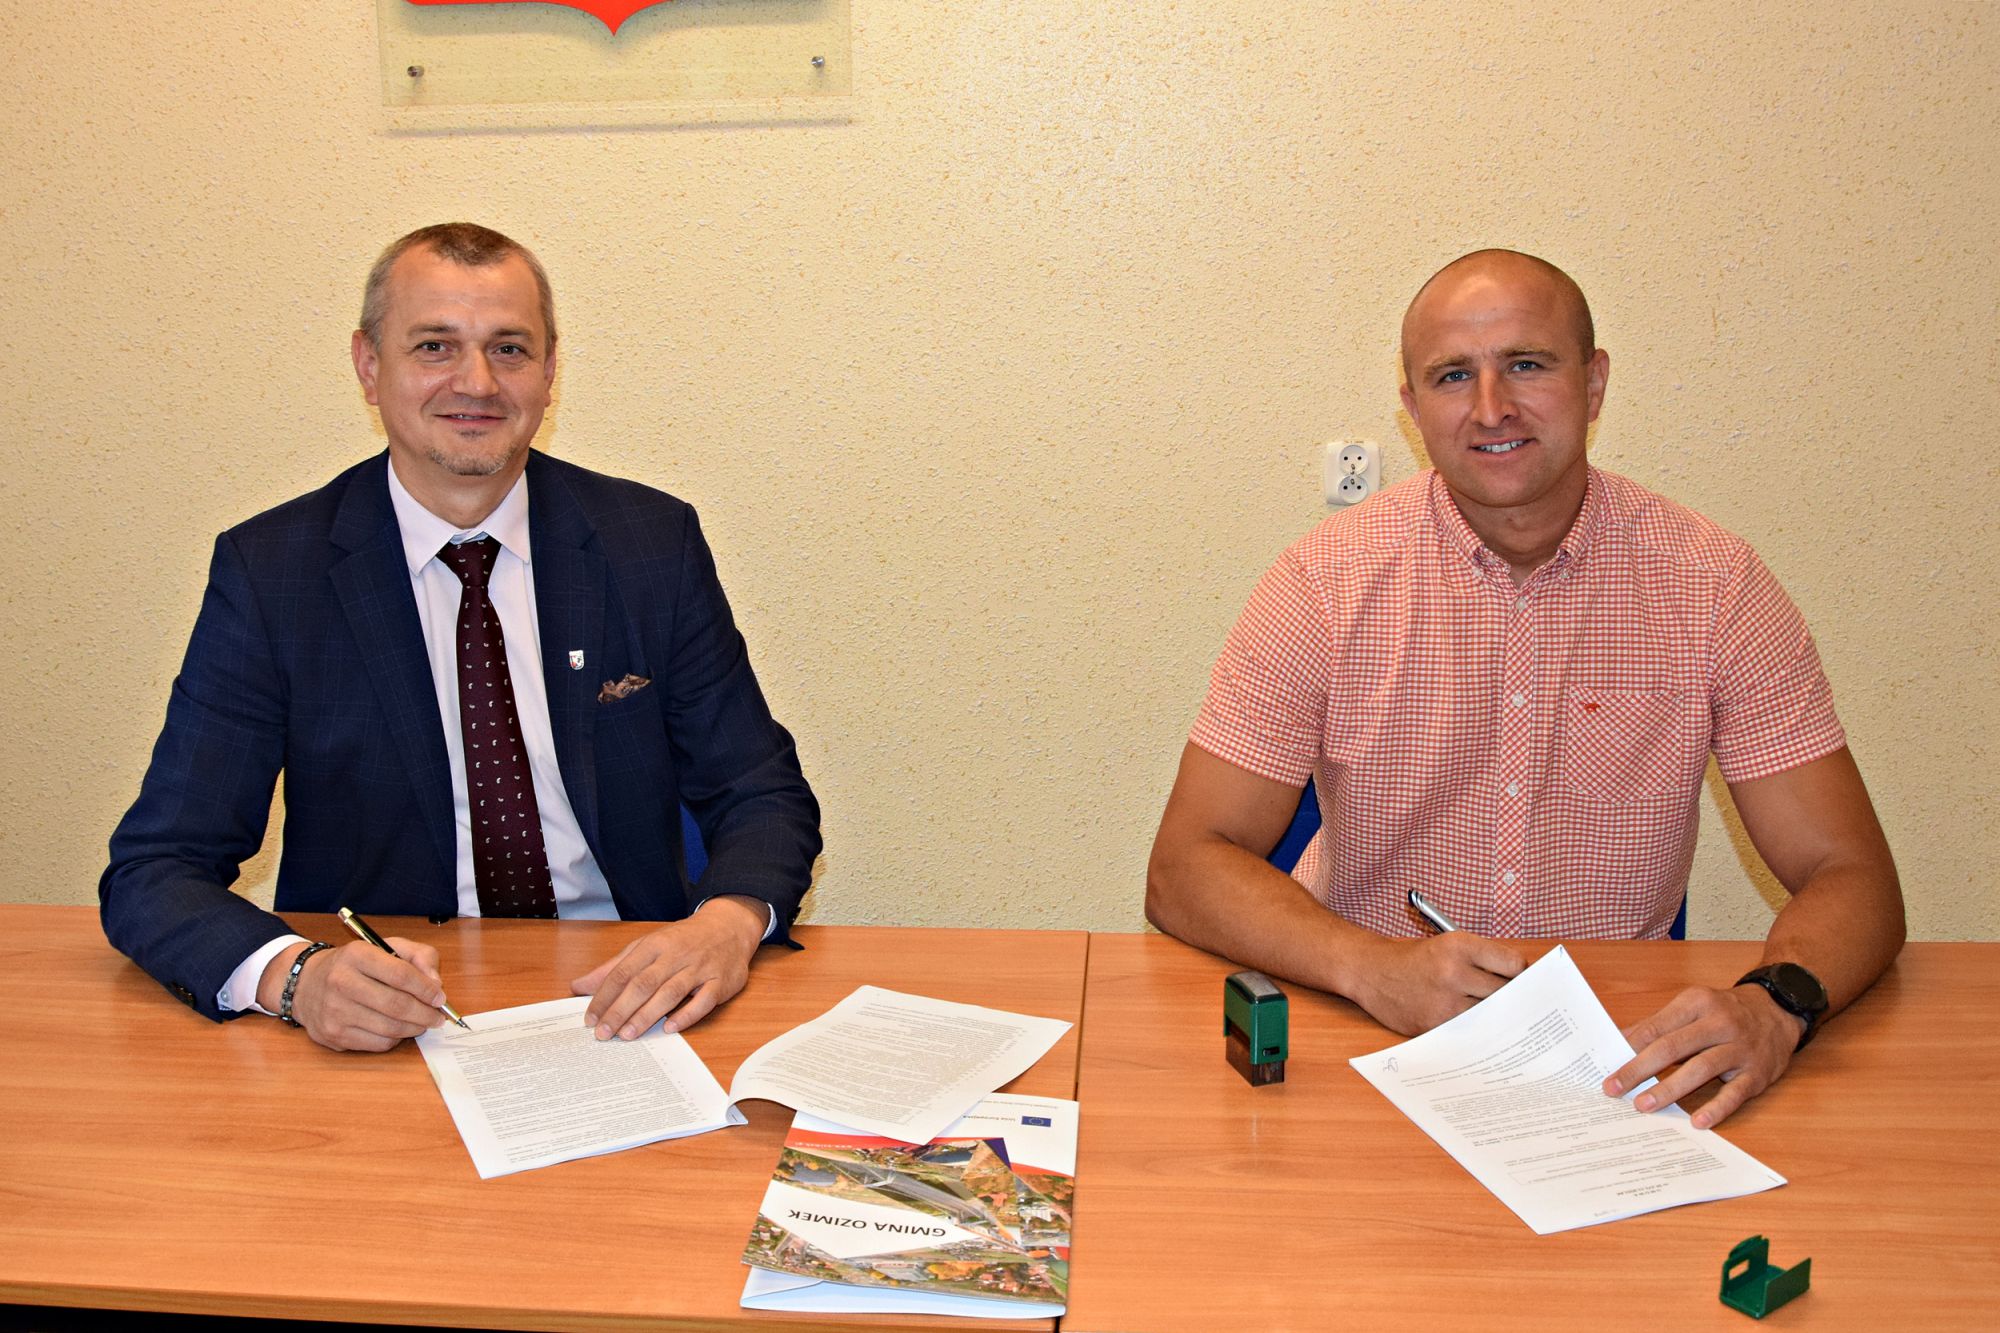 Podpisano umowę na budowę drogi dojazdowej do gruntów rolnych we wsi Pustków